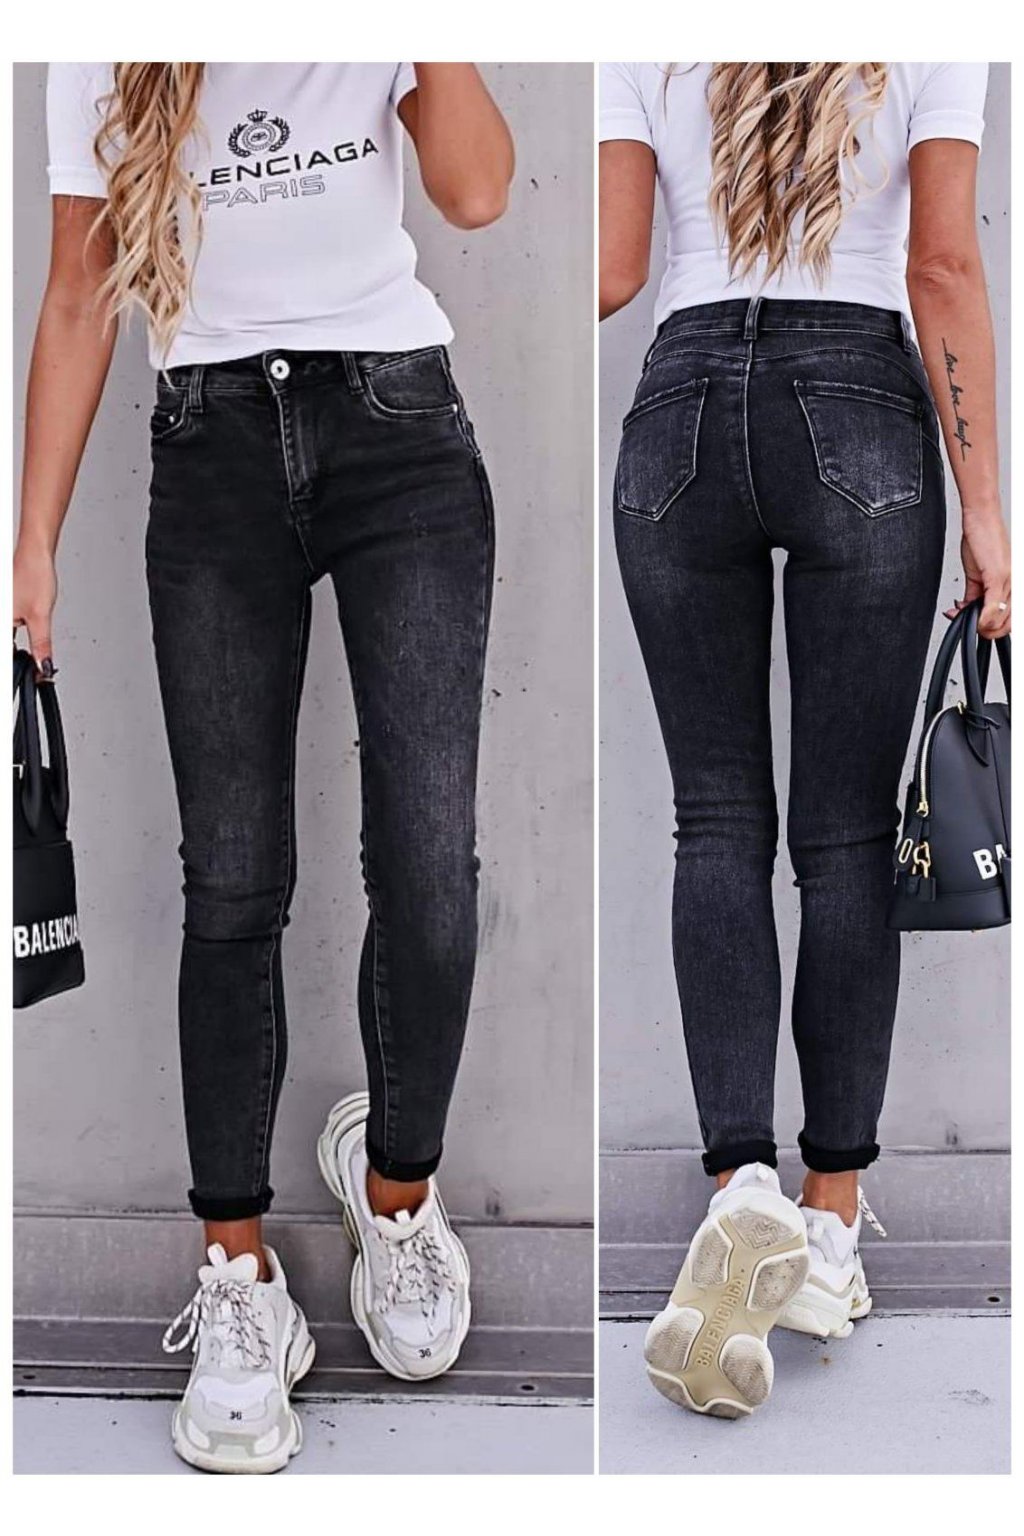 černé jeans jednoduché trendy